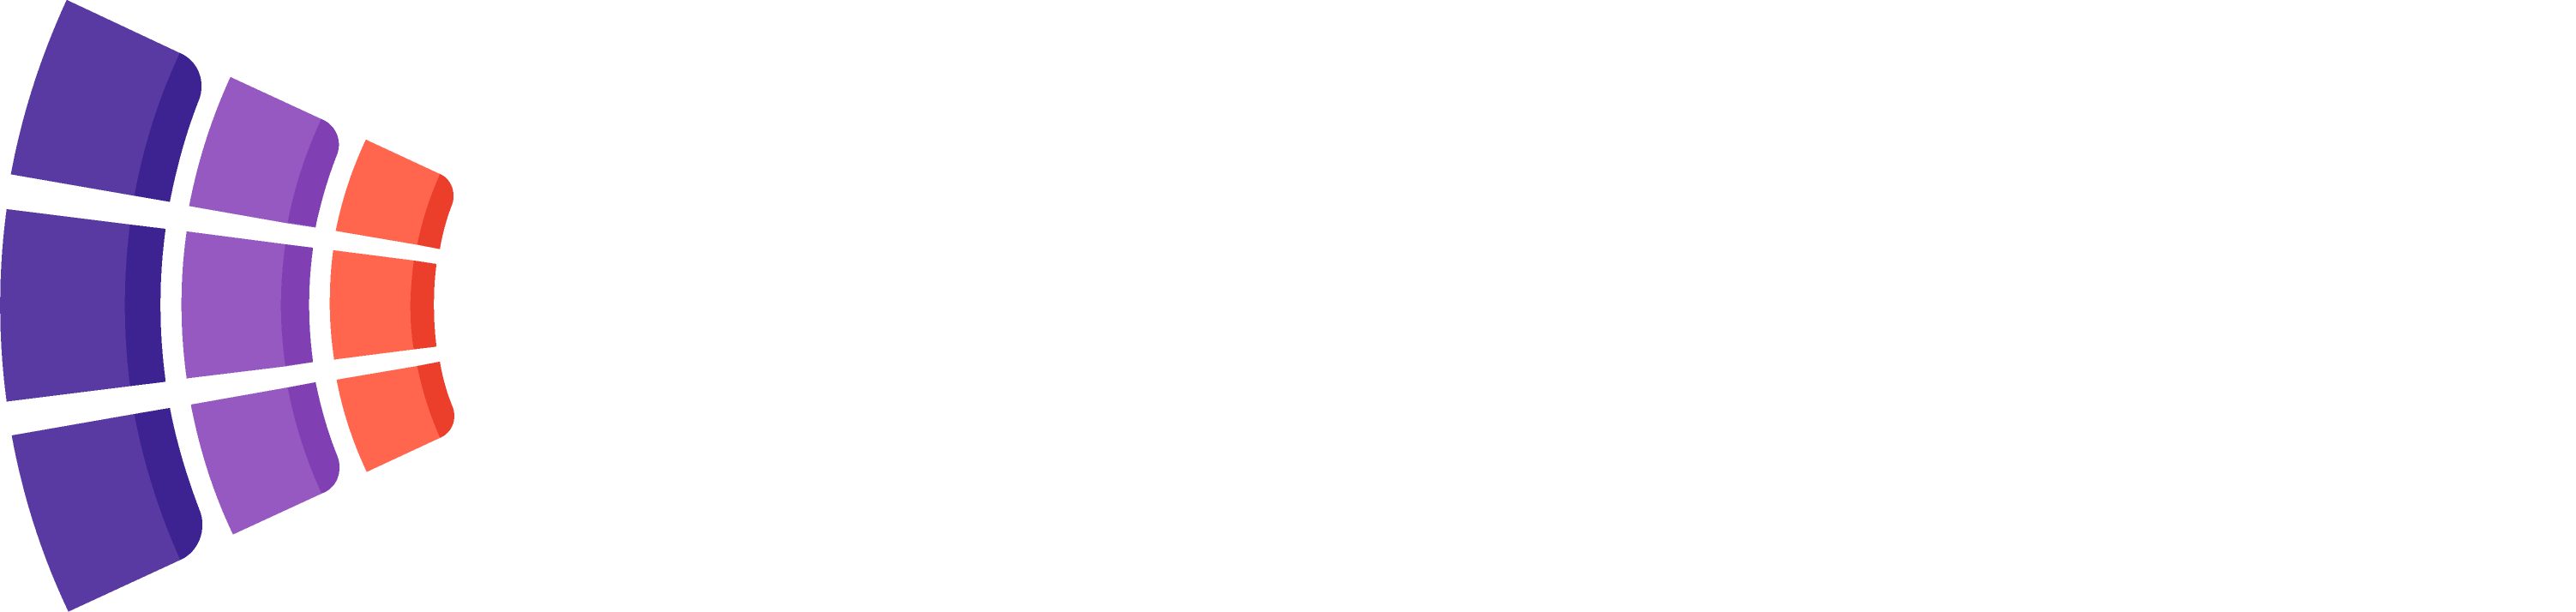 Eventfinda logo on dark background